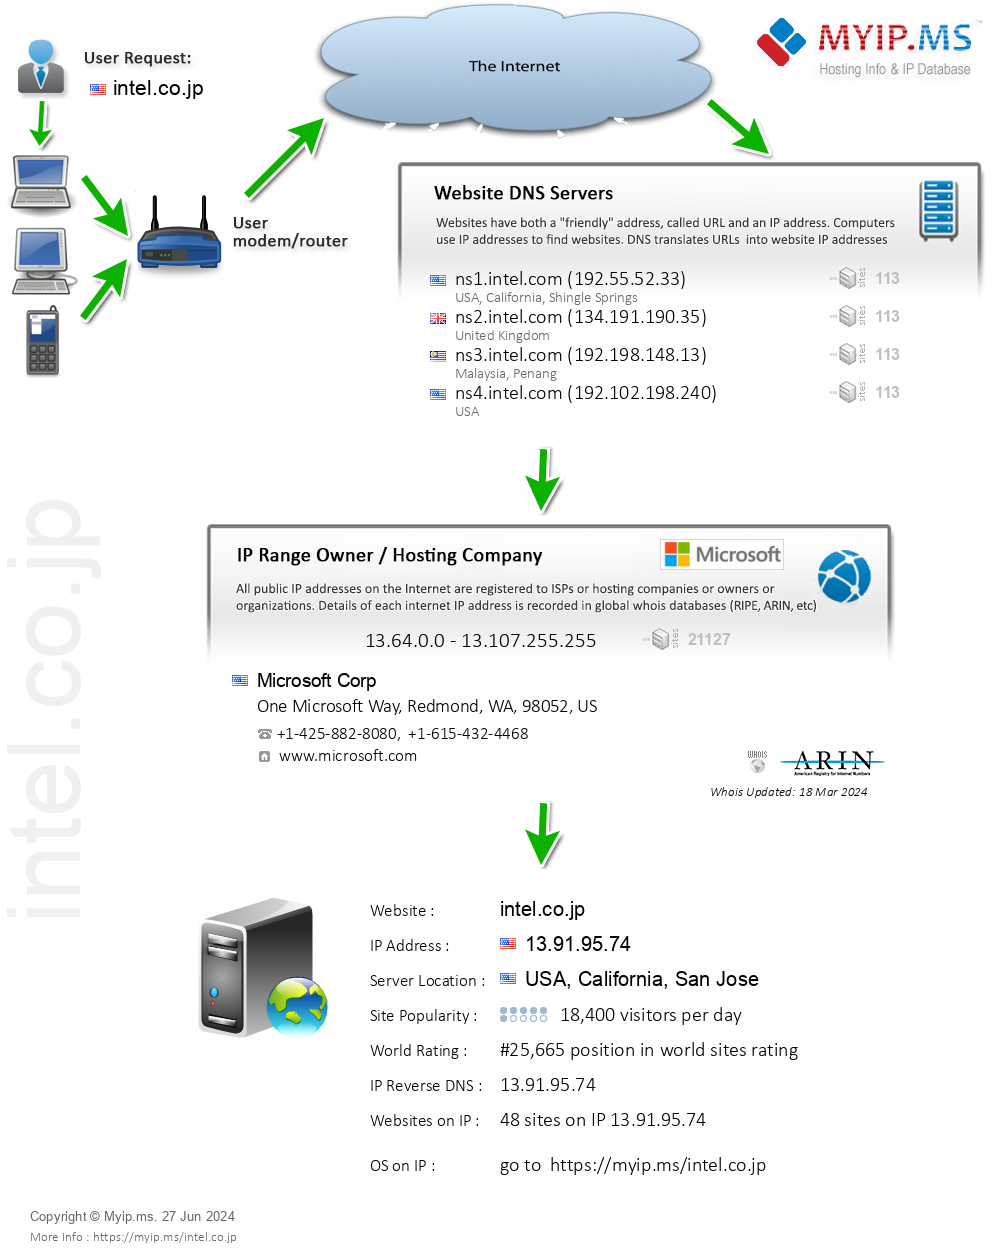 Intel.co.jp - Website Hosting Visual IP Diagram